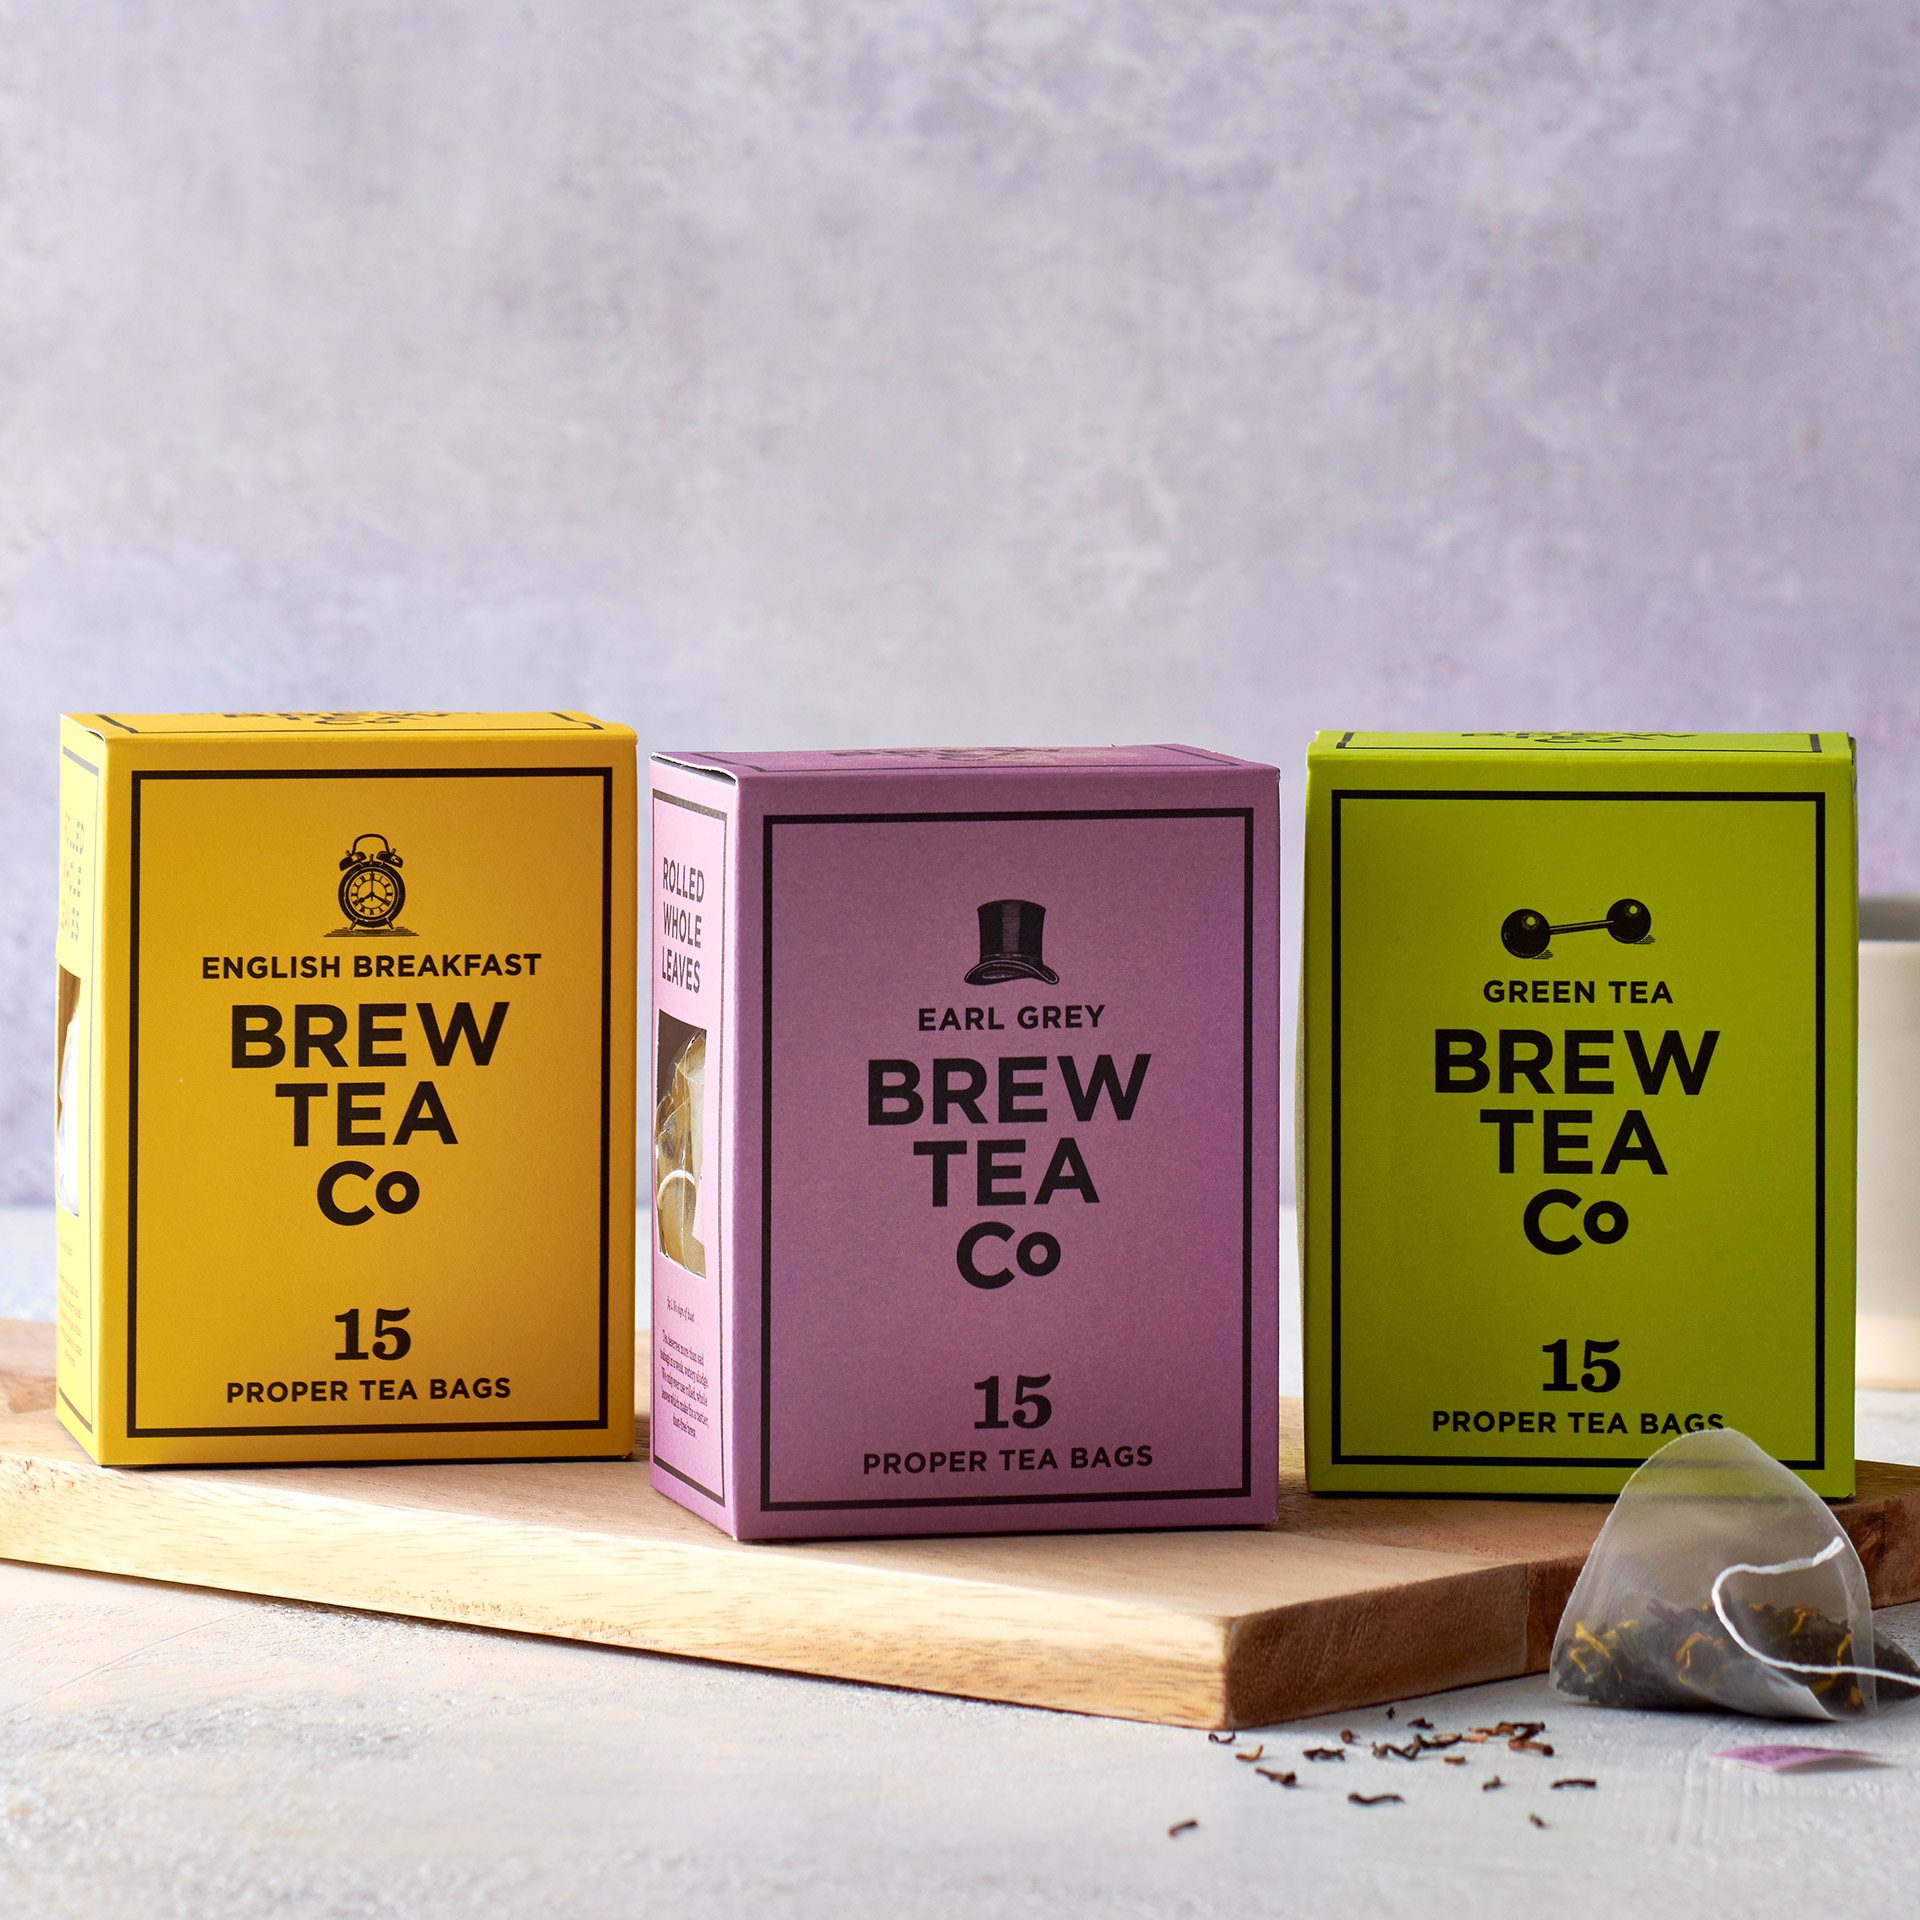 Three boxes of Brew Tea proper tea bags